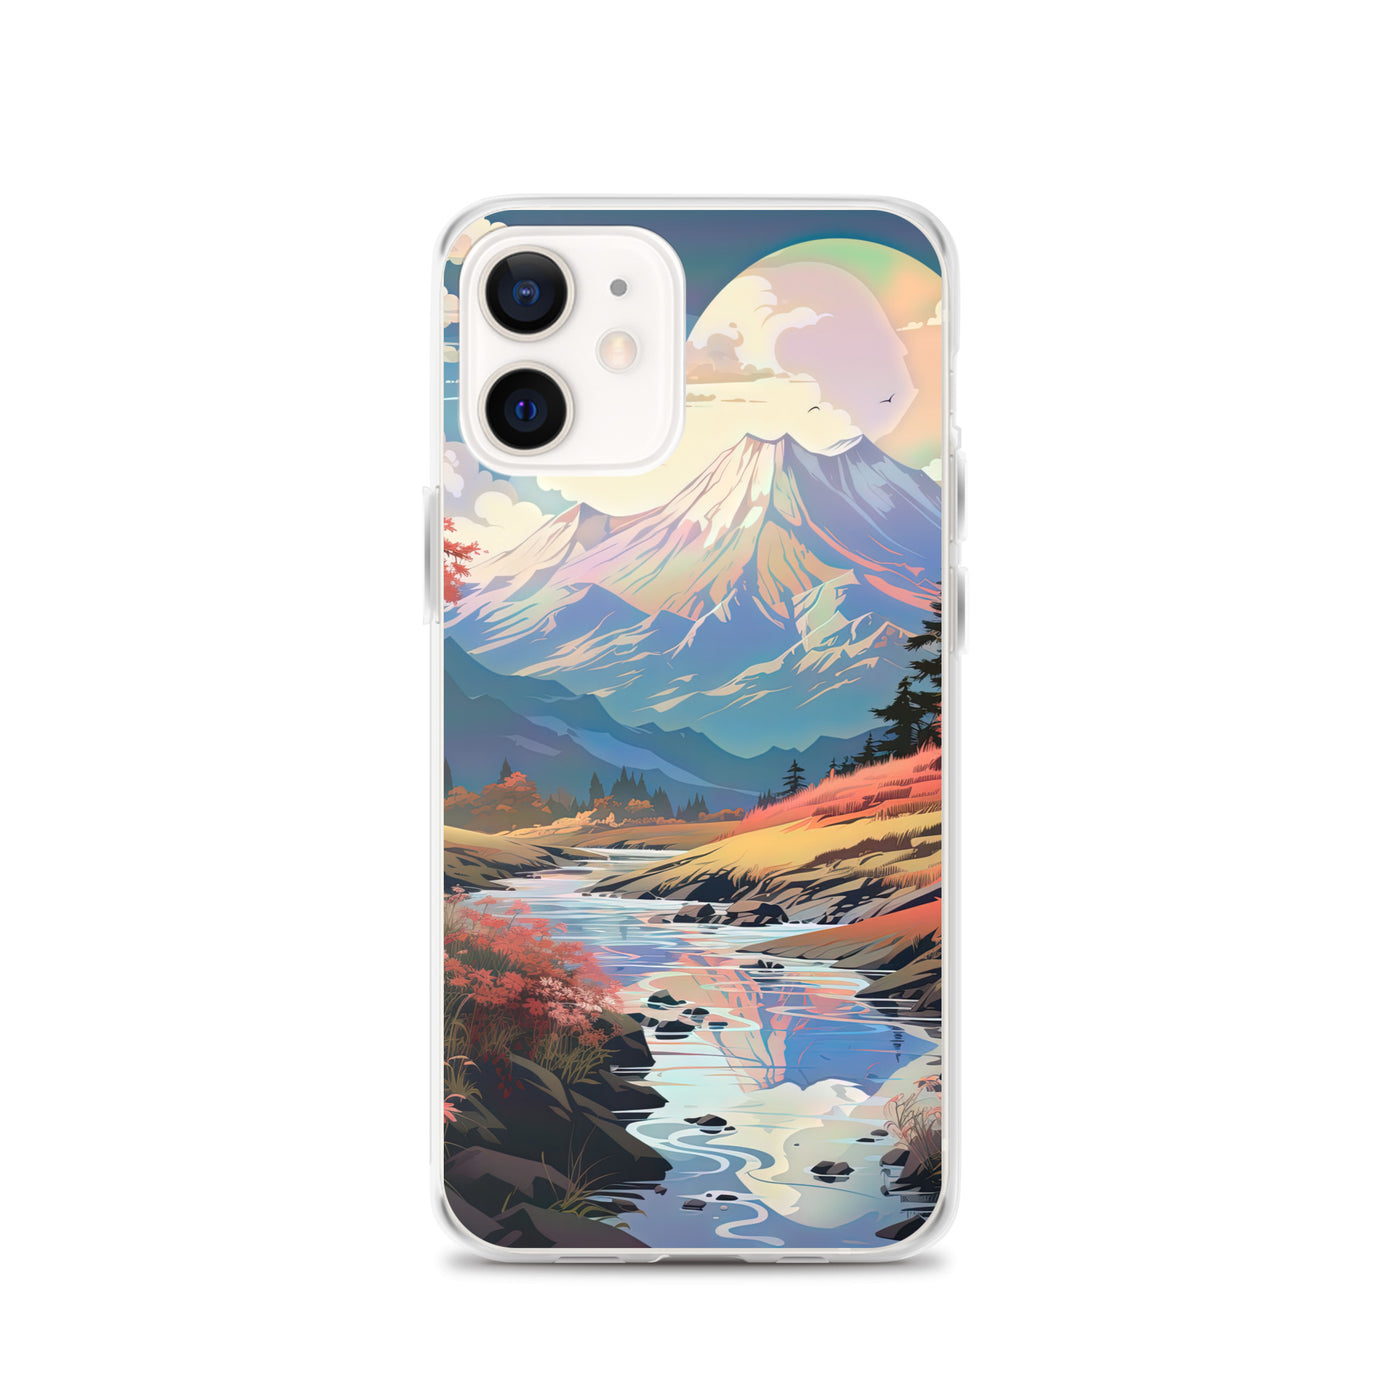 Berge. Fluss und Blumen - Malerei - iPhone Schutzhülle (durchsichtig) berge xxx iPhone 12